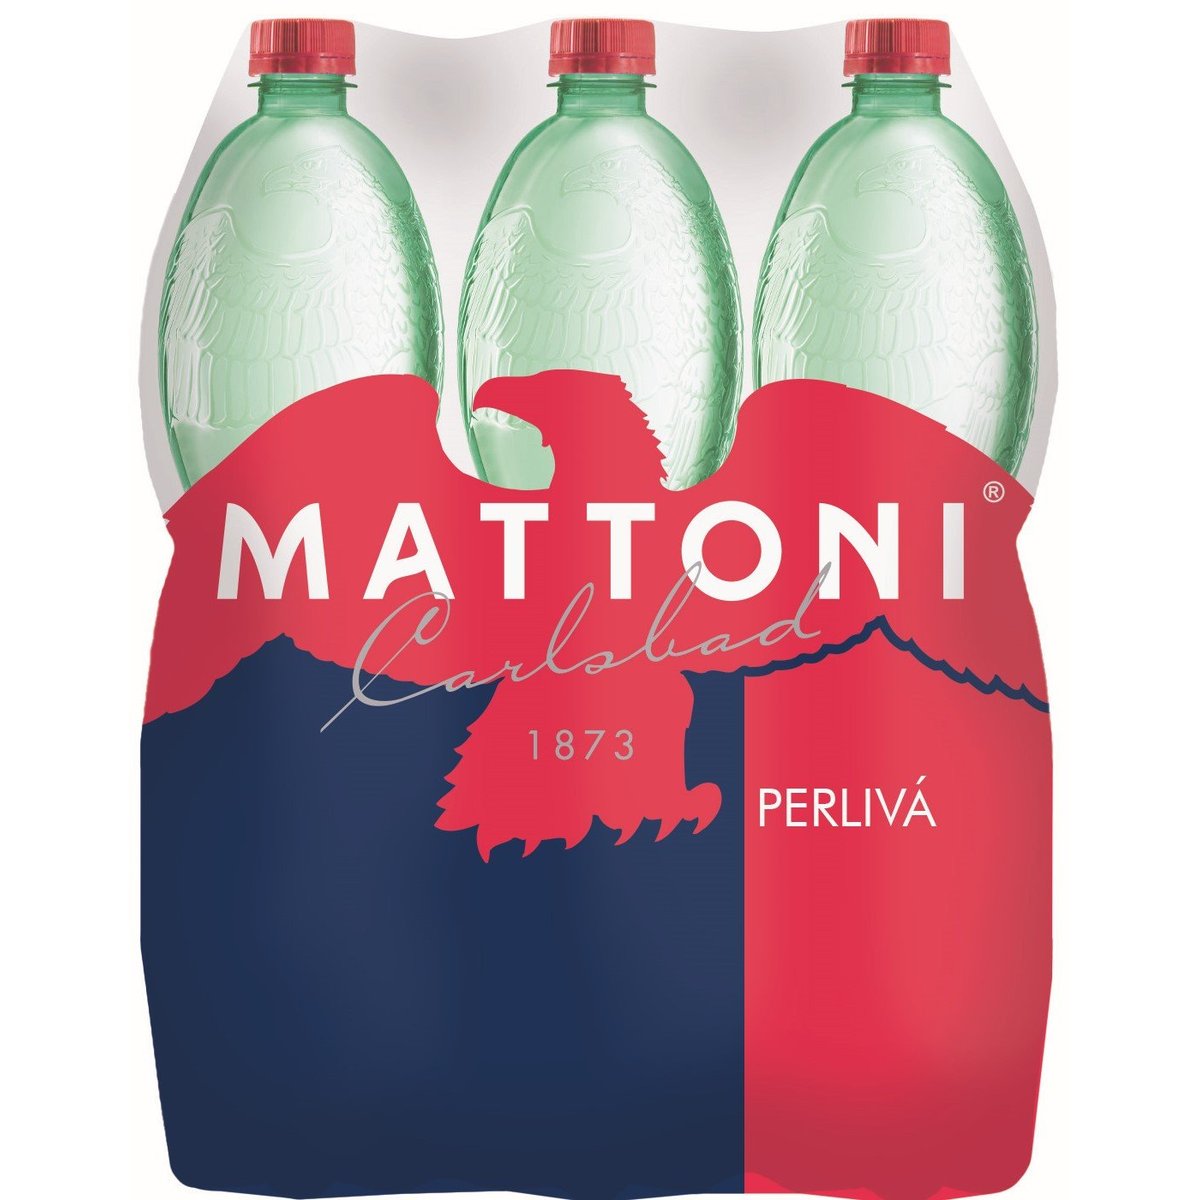 Mattoni minerální voda perlivá (6x1,5l)